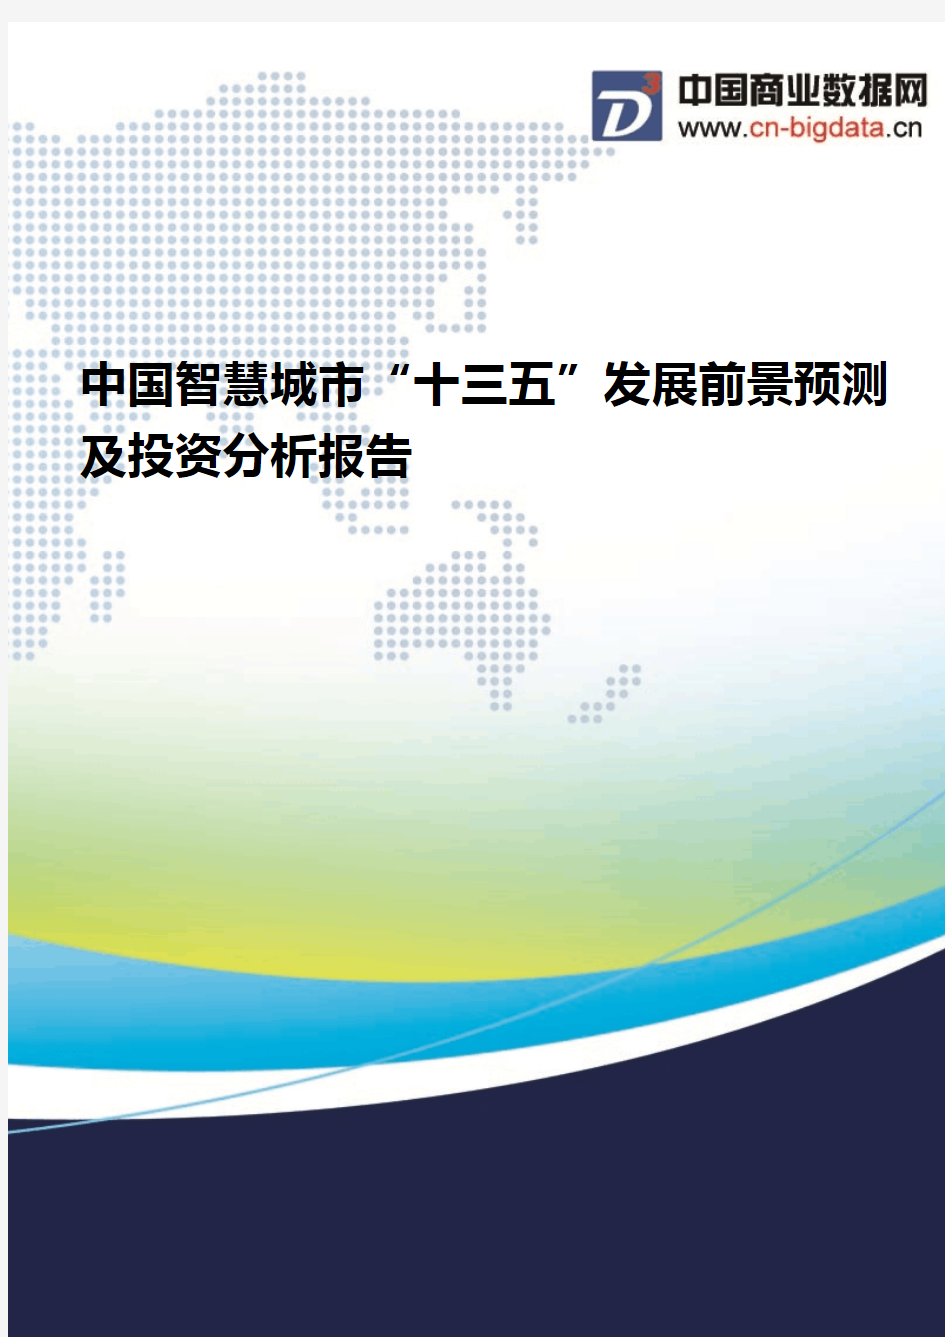 (2017版目录)中国智慧城市“十三五”发展前景预测及投资分析报告